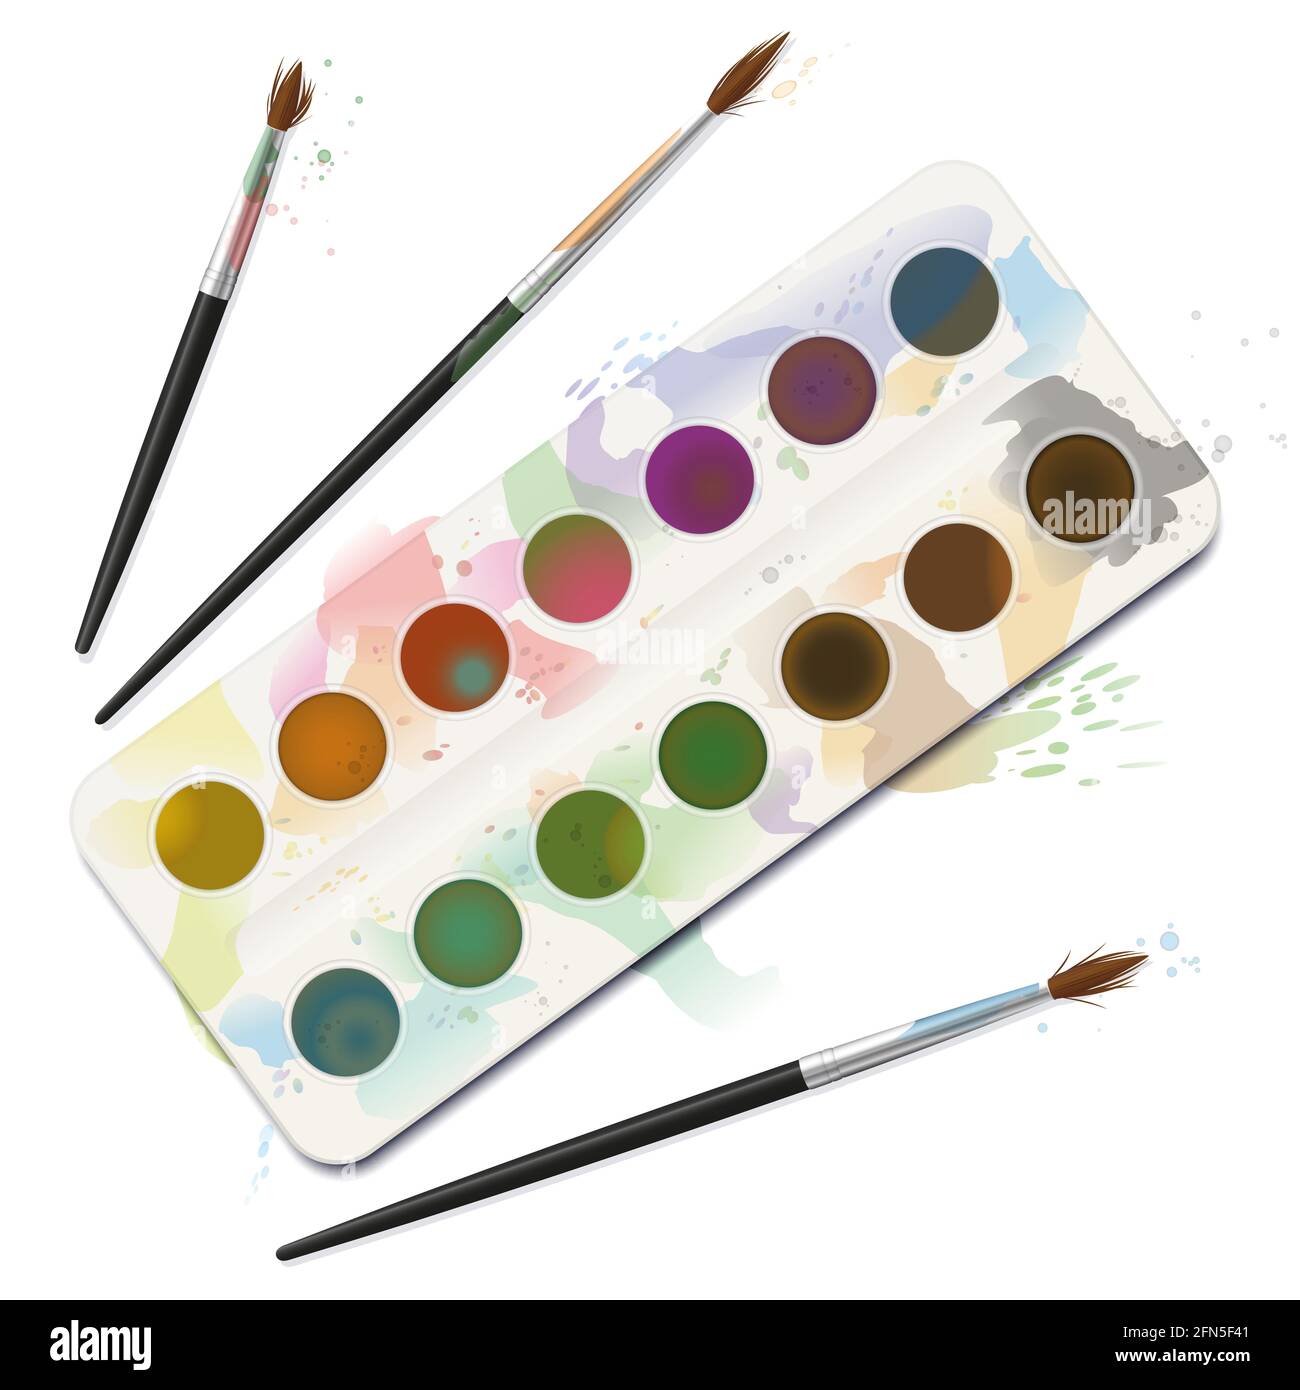 Gebrauchte Aquarellfarbe Box - fleckig, fleckig, verschmutzt, verschüttet, schmutzig mit ausgefransten Pinsel - Abbildung auf weißem Hintergrund. Stockfoto